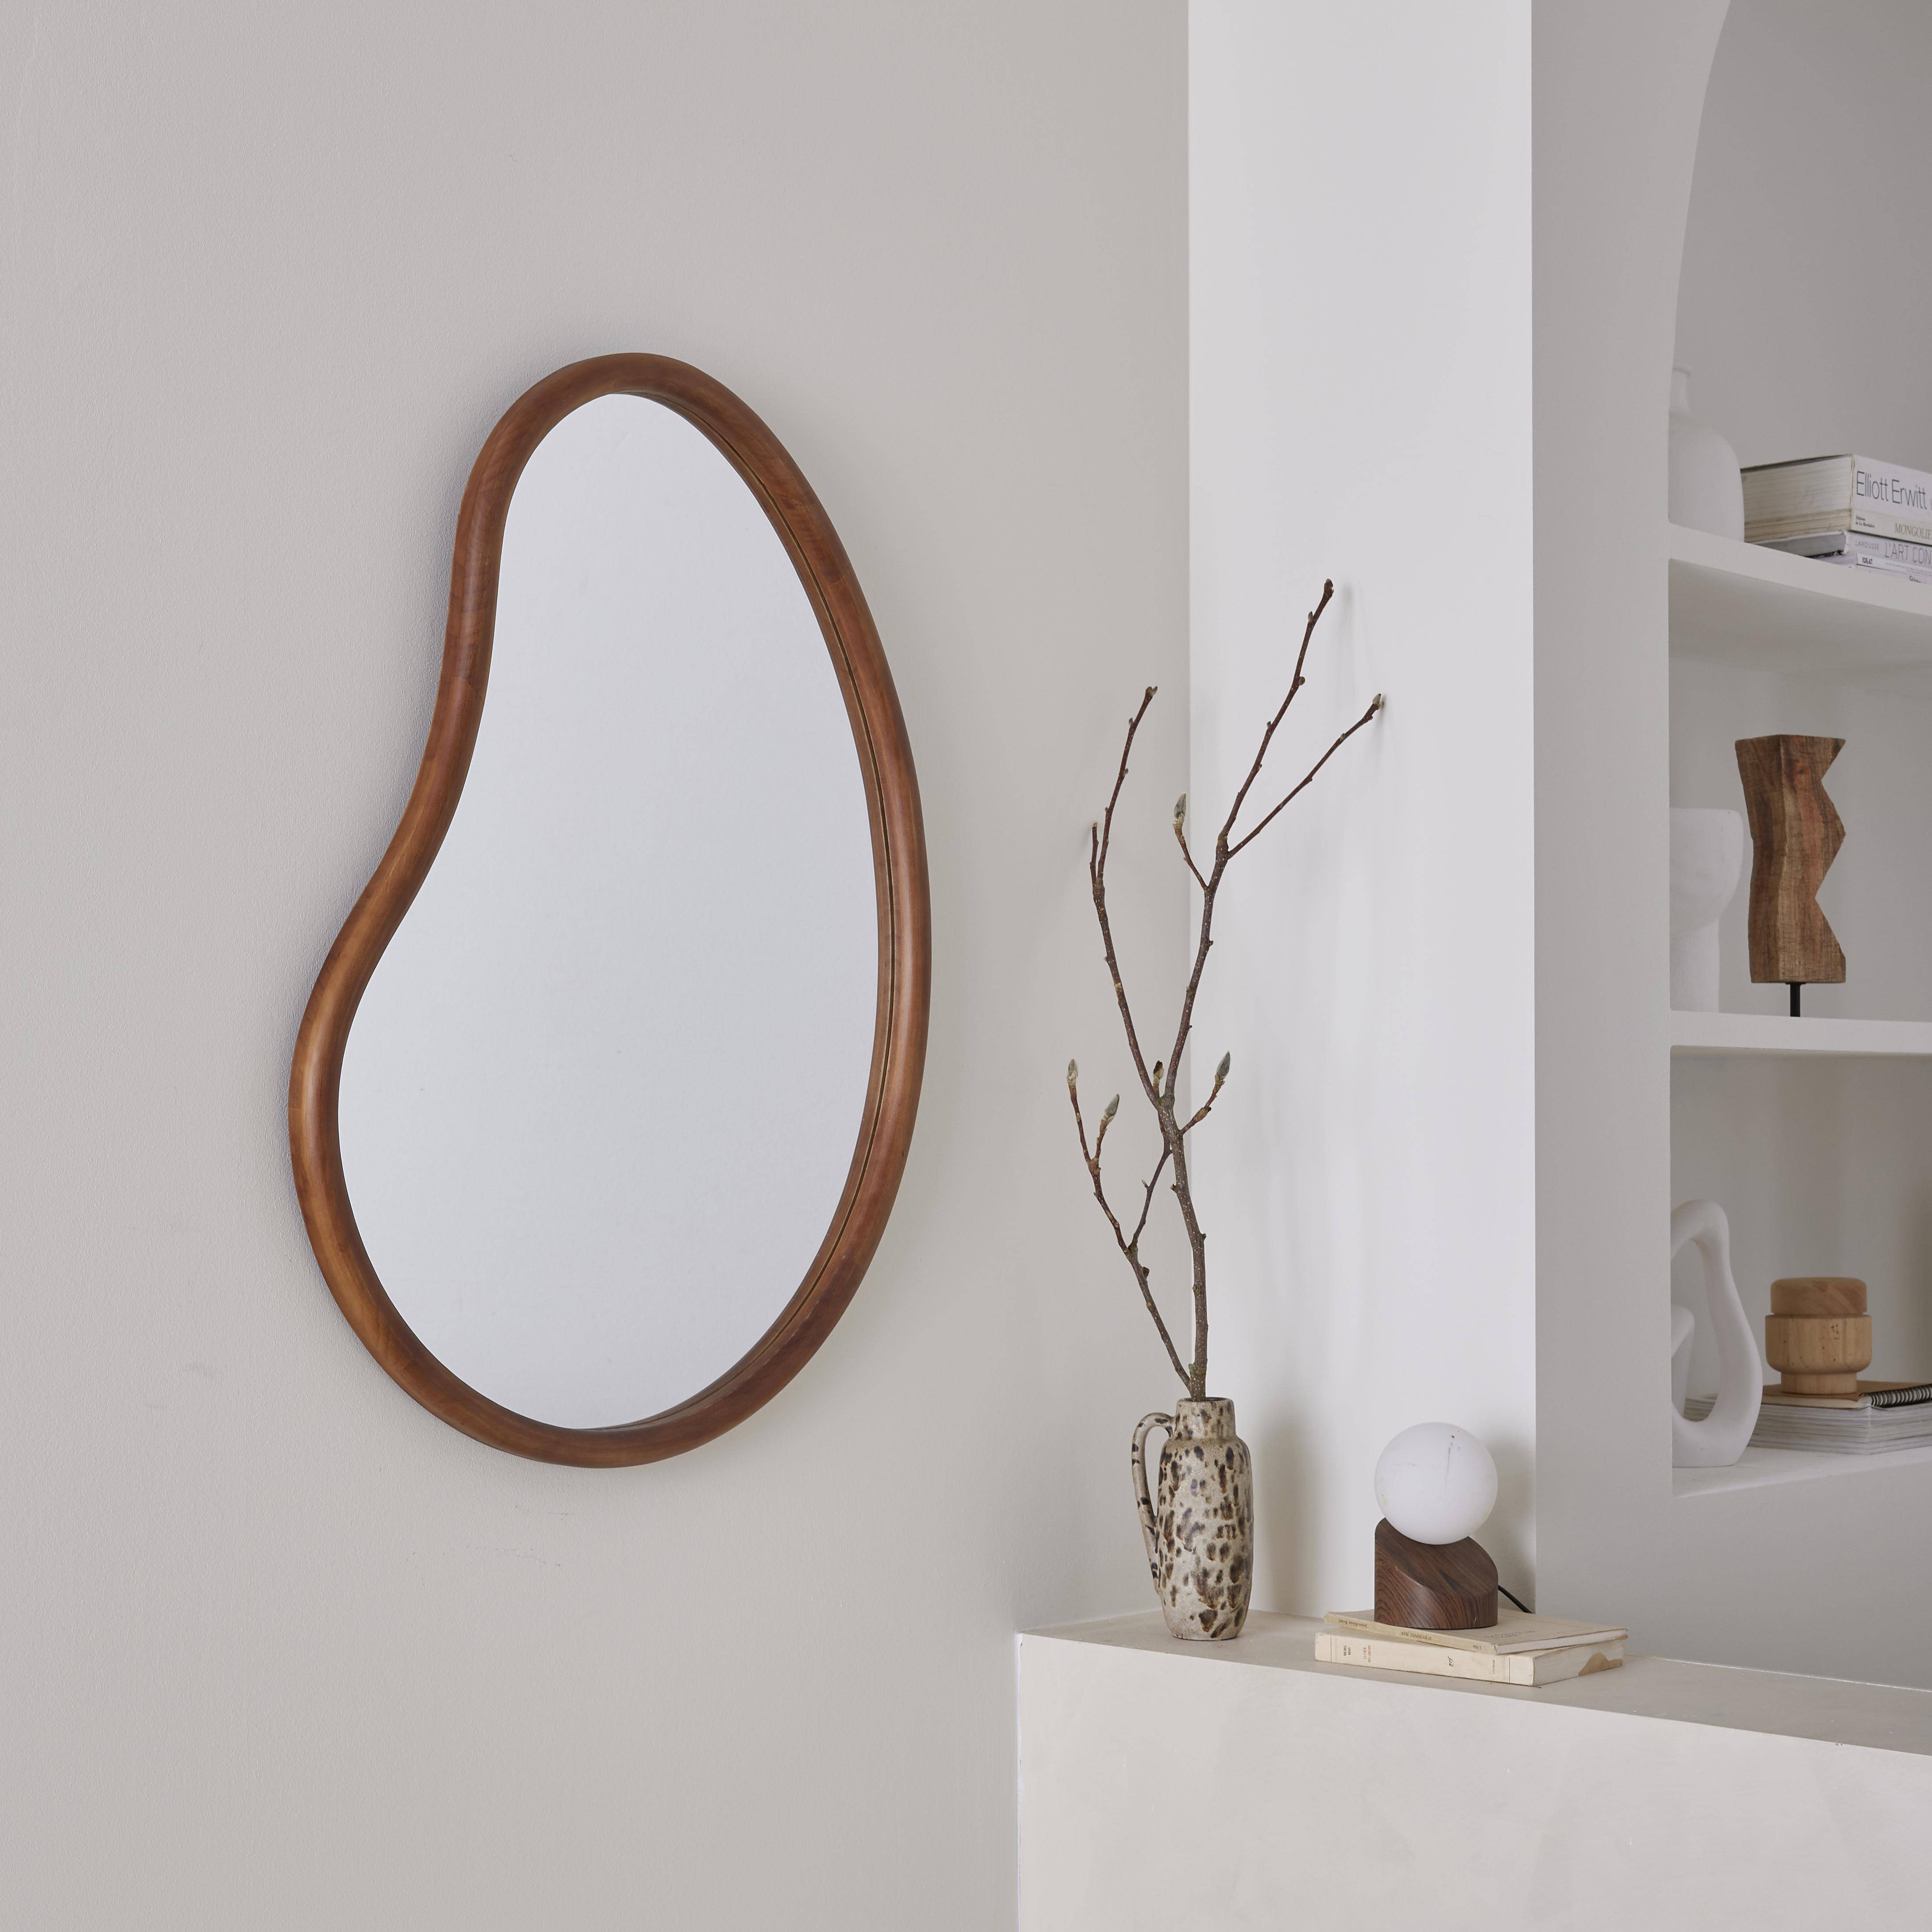 Miroir organique en bois de sapin 85cm épaisseur 3cm coloris noyer idéal entrée, chambre ou salle de bain,sweeek,Photo1